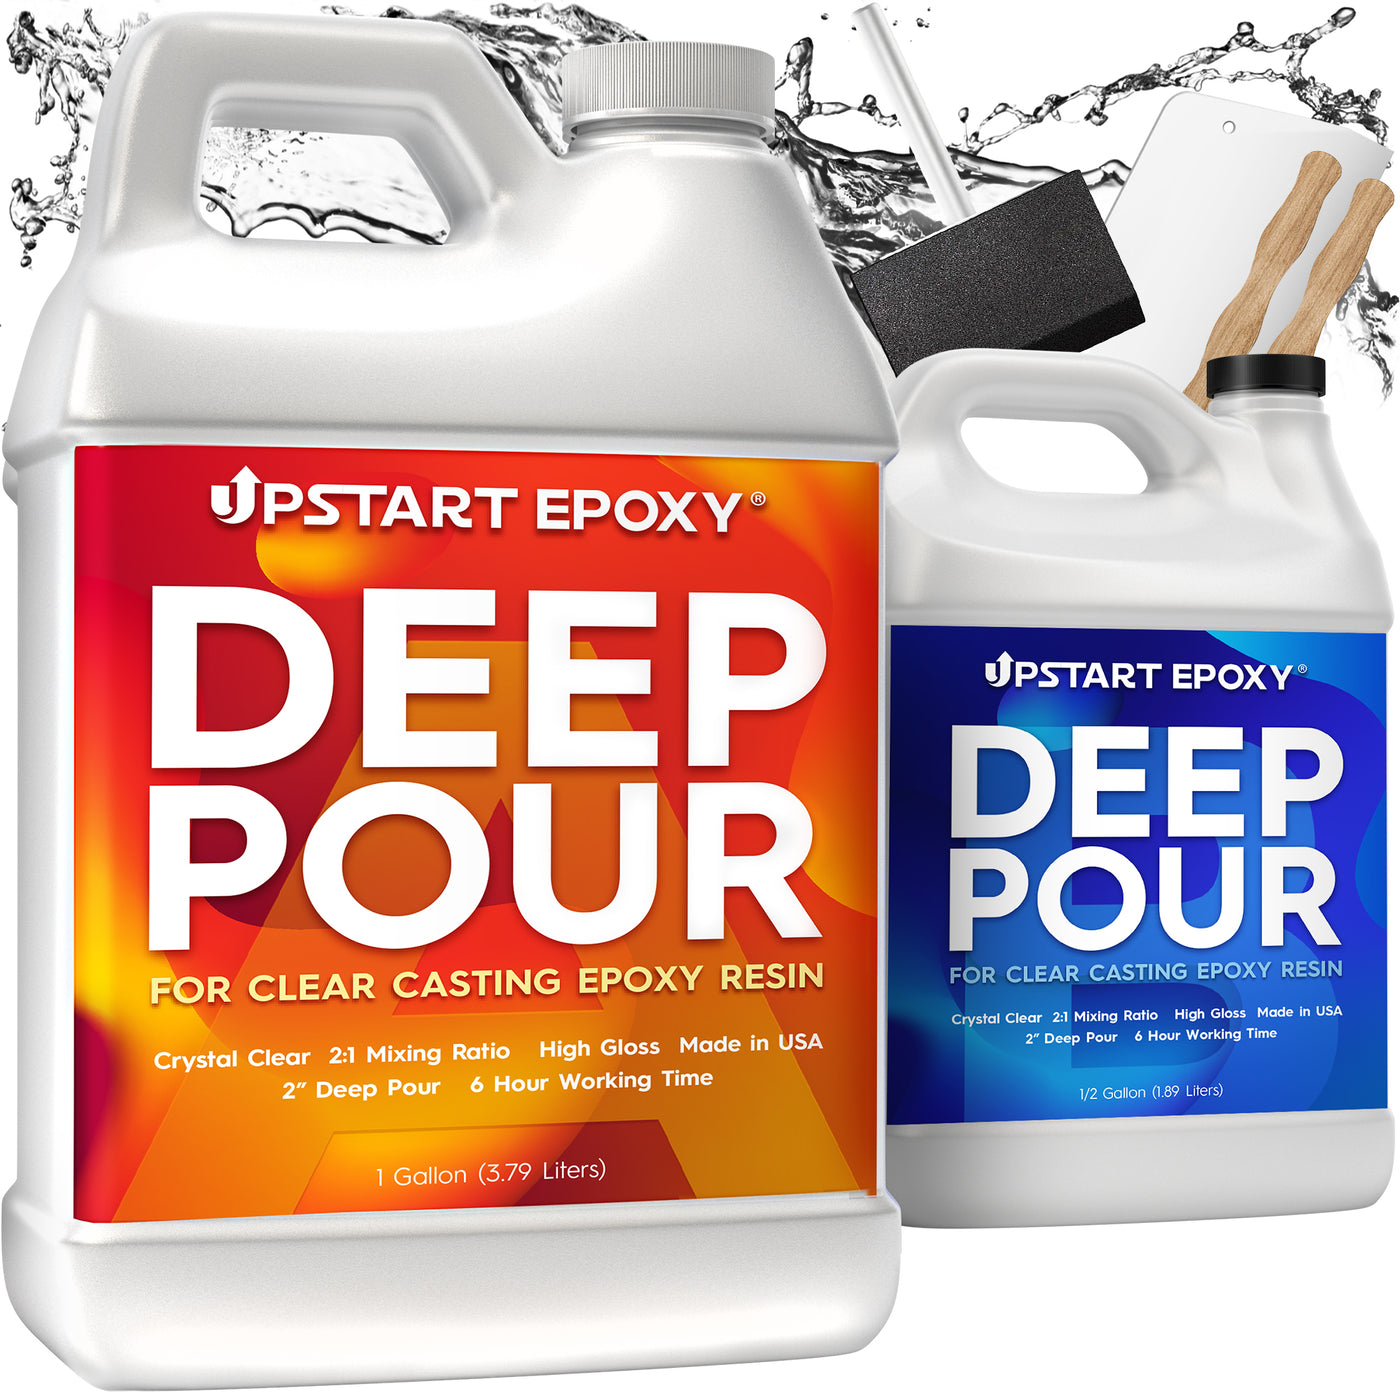 Deep Pour Epoxy Resin